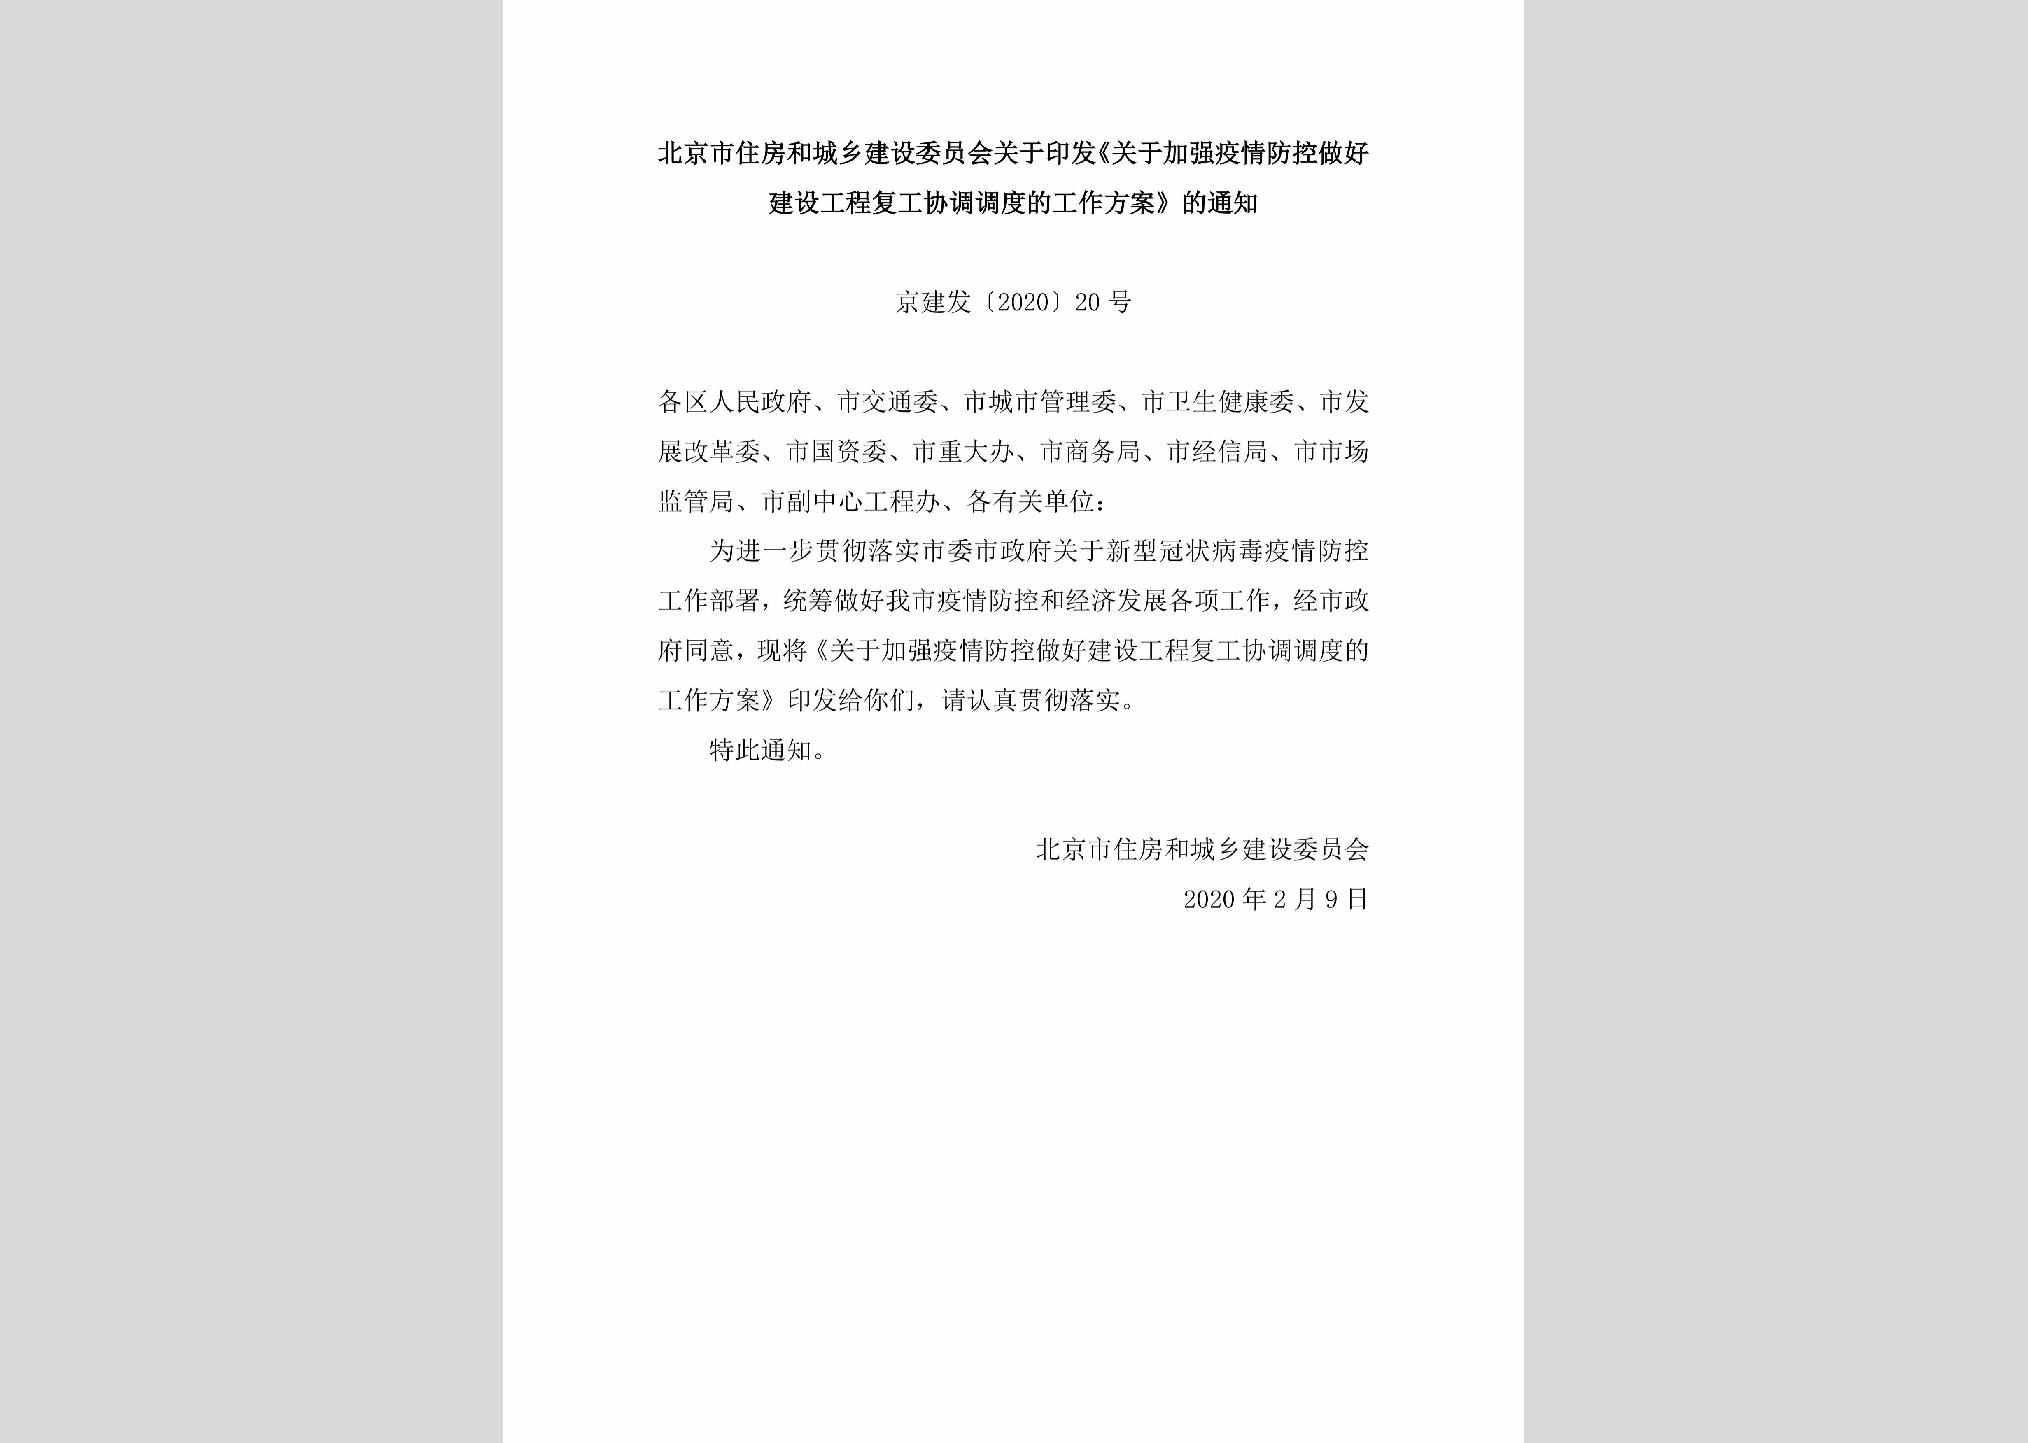 京建发[2020]20号：北京市住房和城乡建设委员会关于印发《关于加强疫情防控做好建设工程复工协调调度的工作方案》的通知